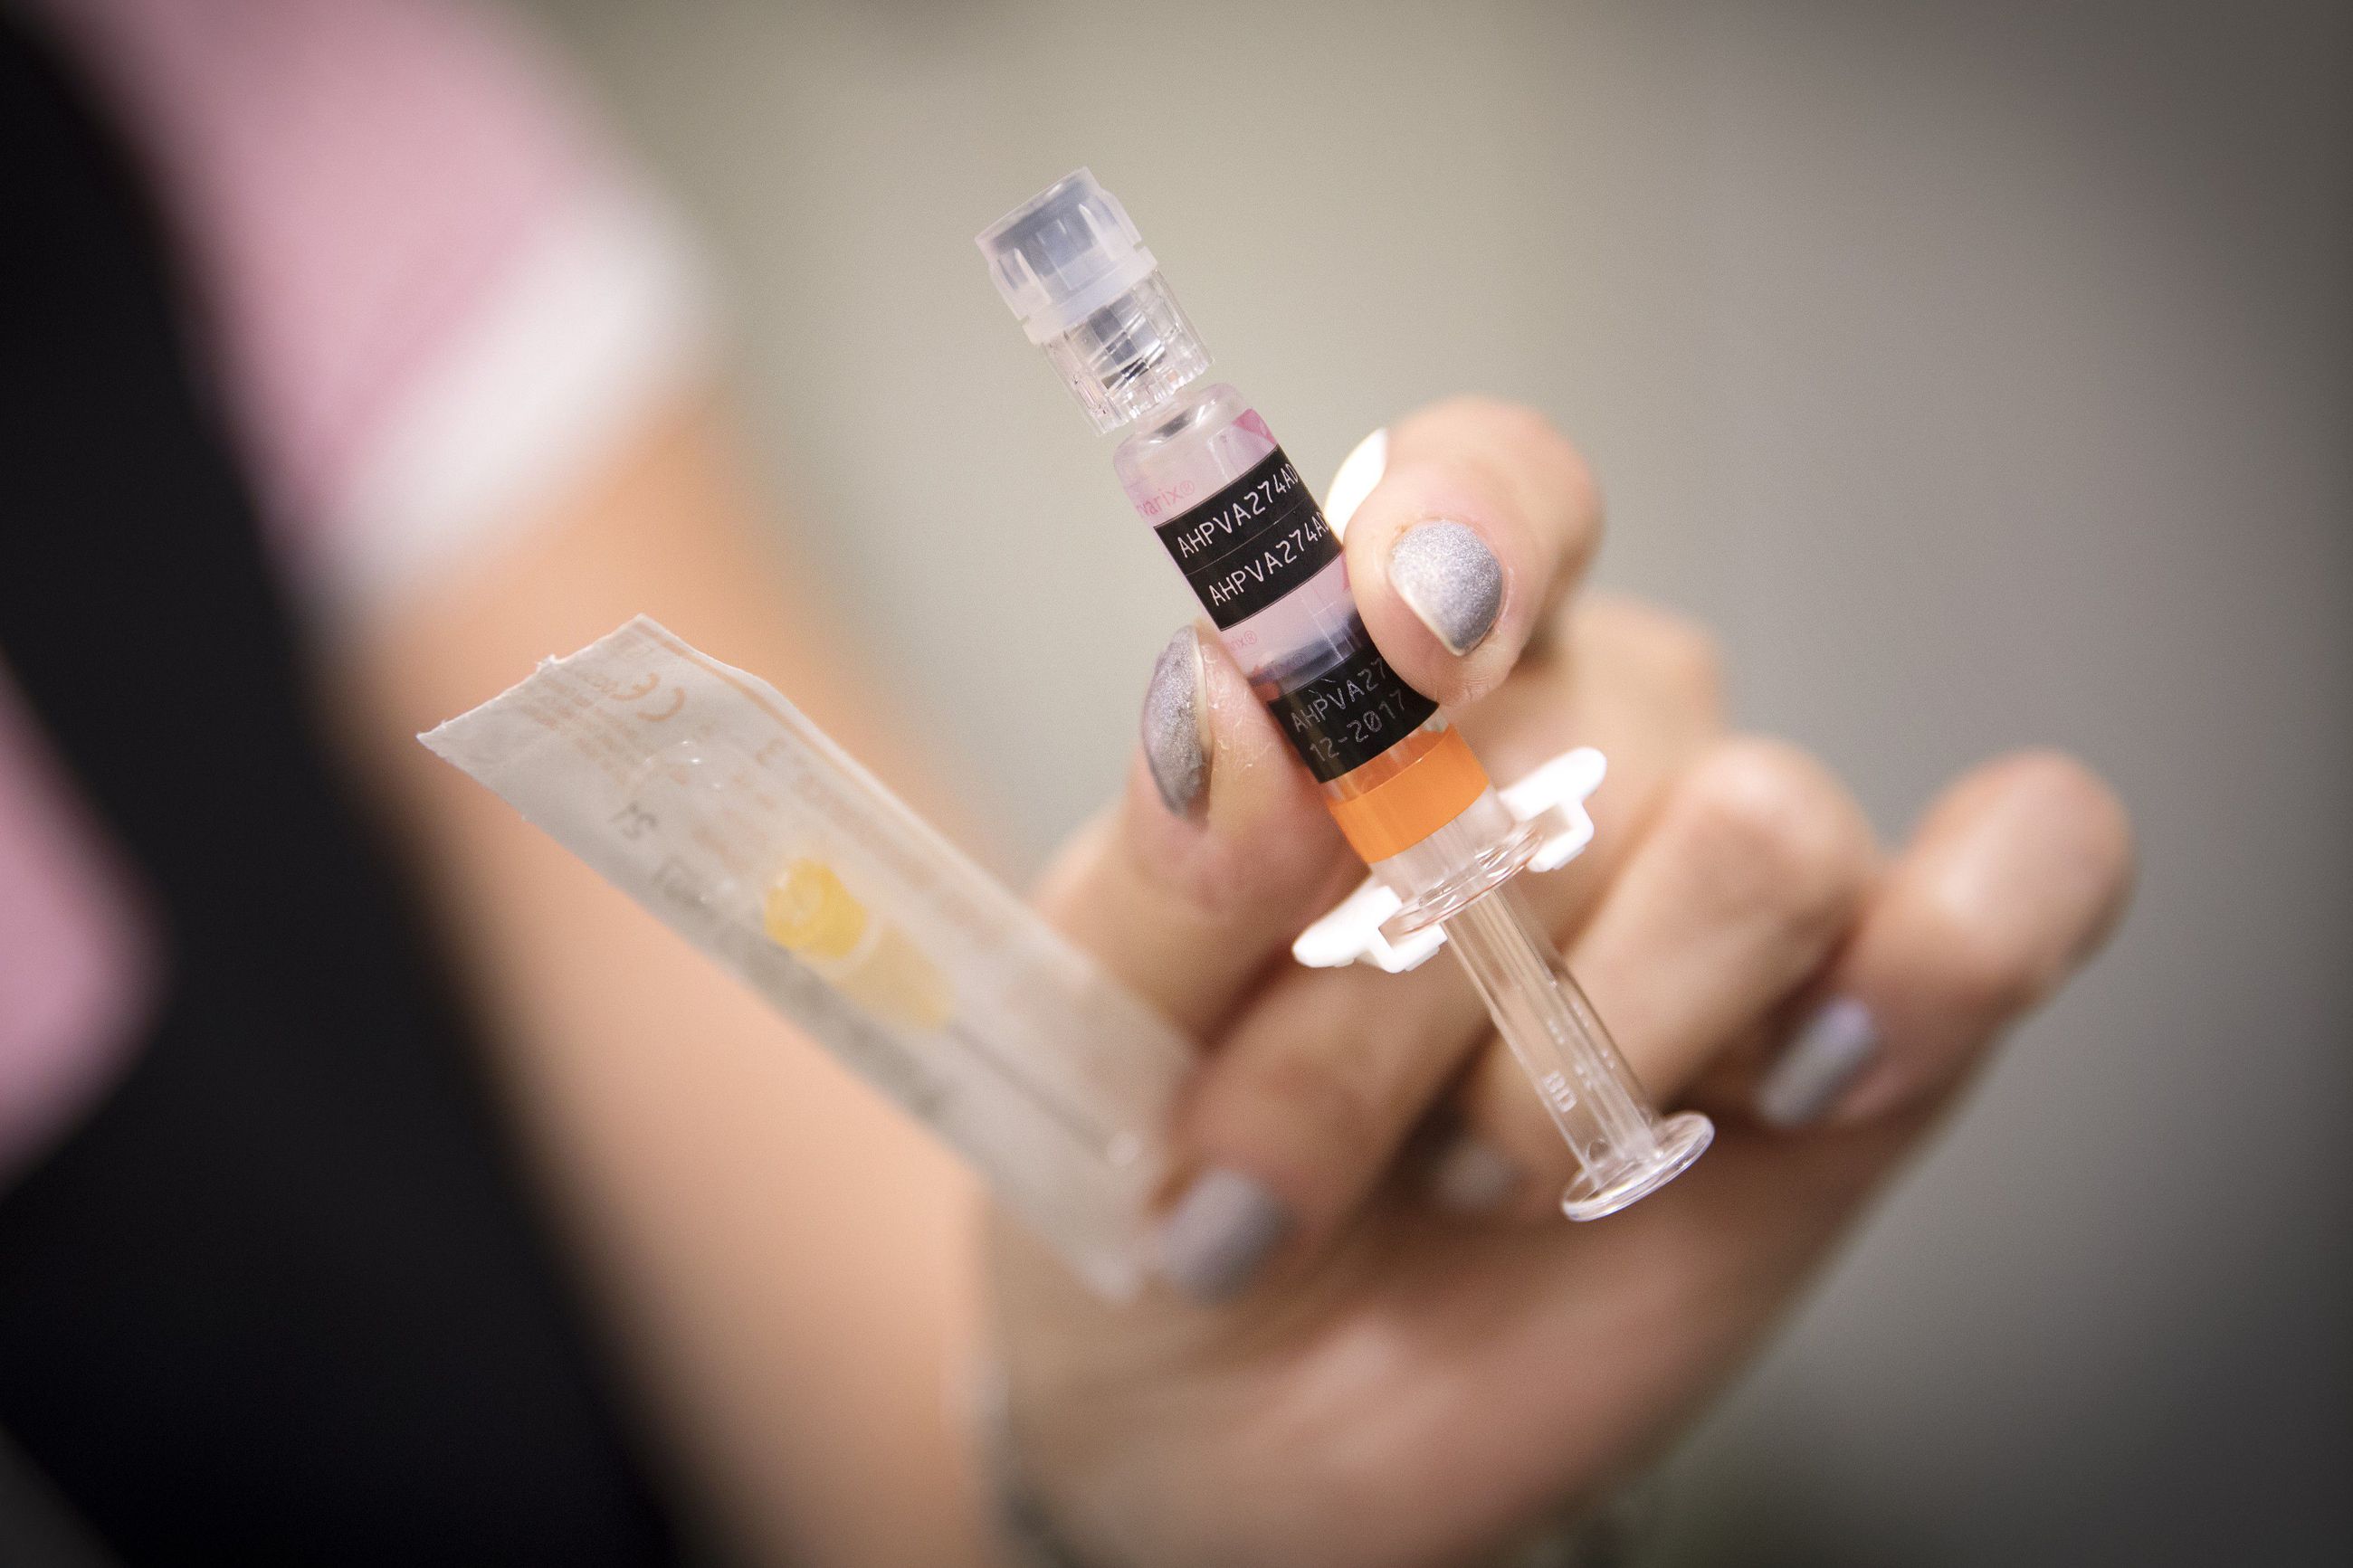 Hpv rokote oireet Mitä rokottamalla on saatu aikaan? zona et papillomavirus